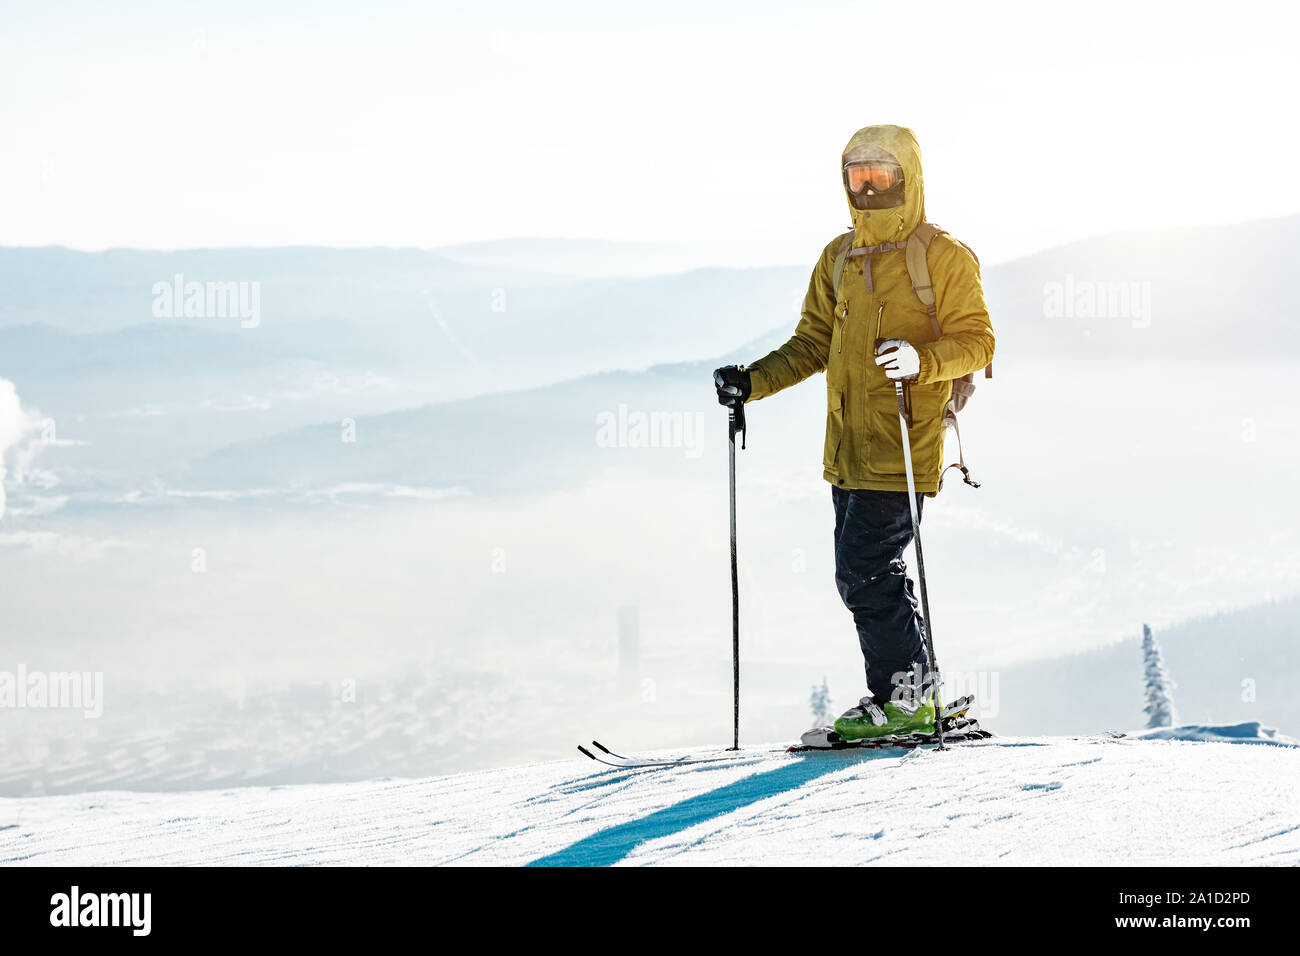 Peuplements skieur avec ski en montagne au début de la pente Banque D'Images